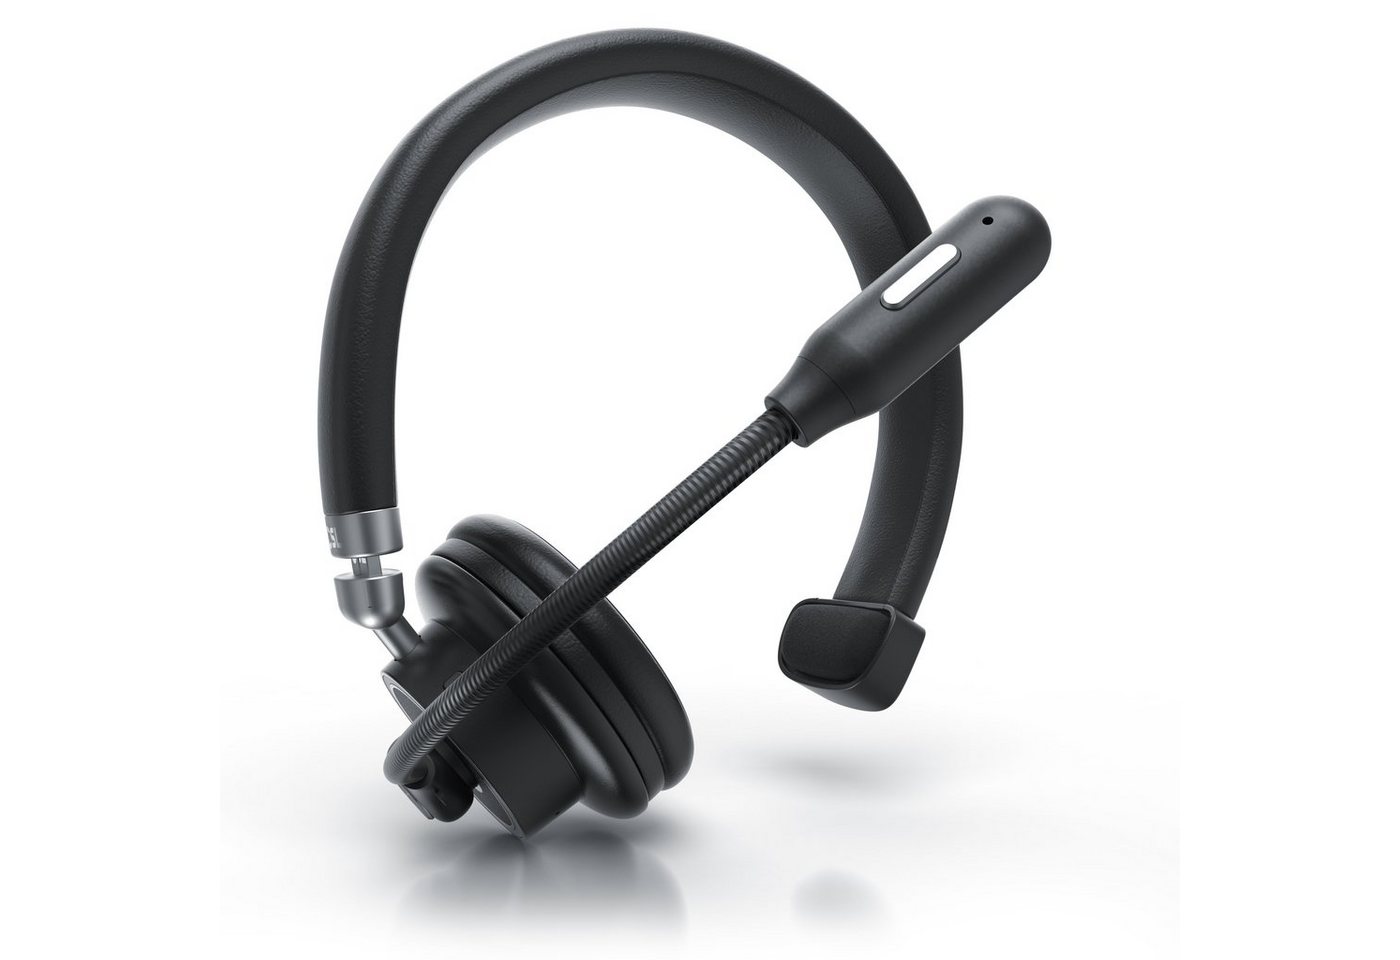 CSL Wireless-Headset (Multipoint, freisprechen, für Auto, LKW, Computer, VoIP, Call Center & Handys, Bluetooth 4.1, Kopfhörer mit flexiblem hochklappbarem Mikrofon, kabellos, leicht) von CSL